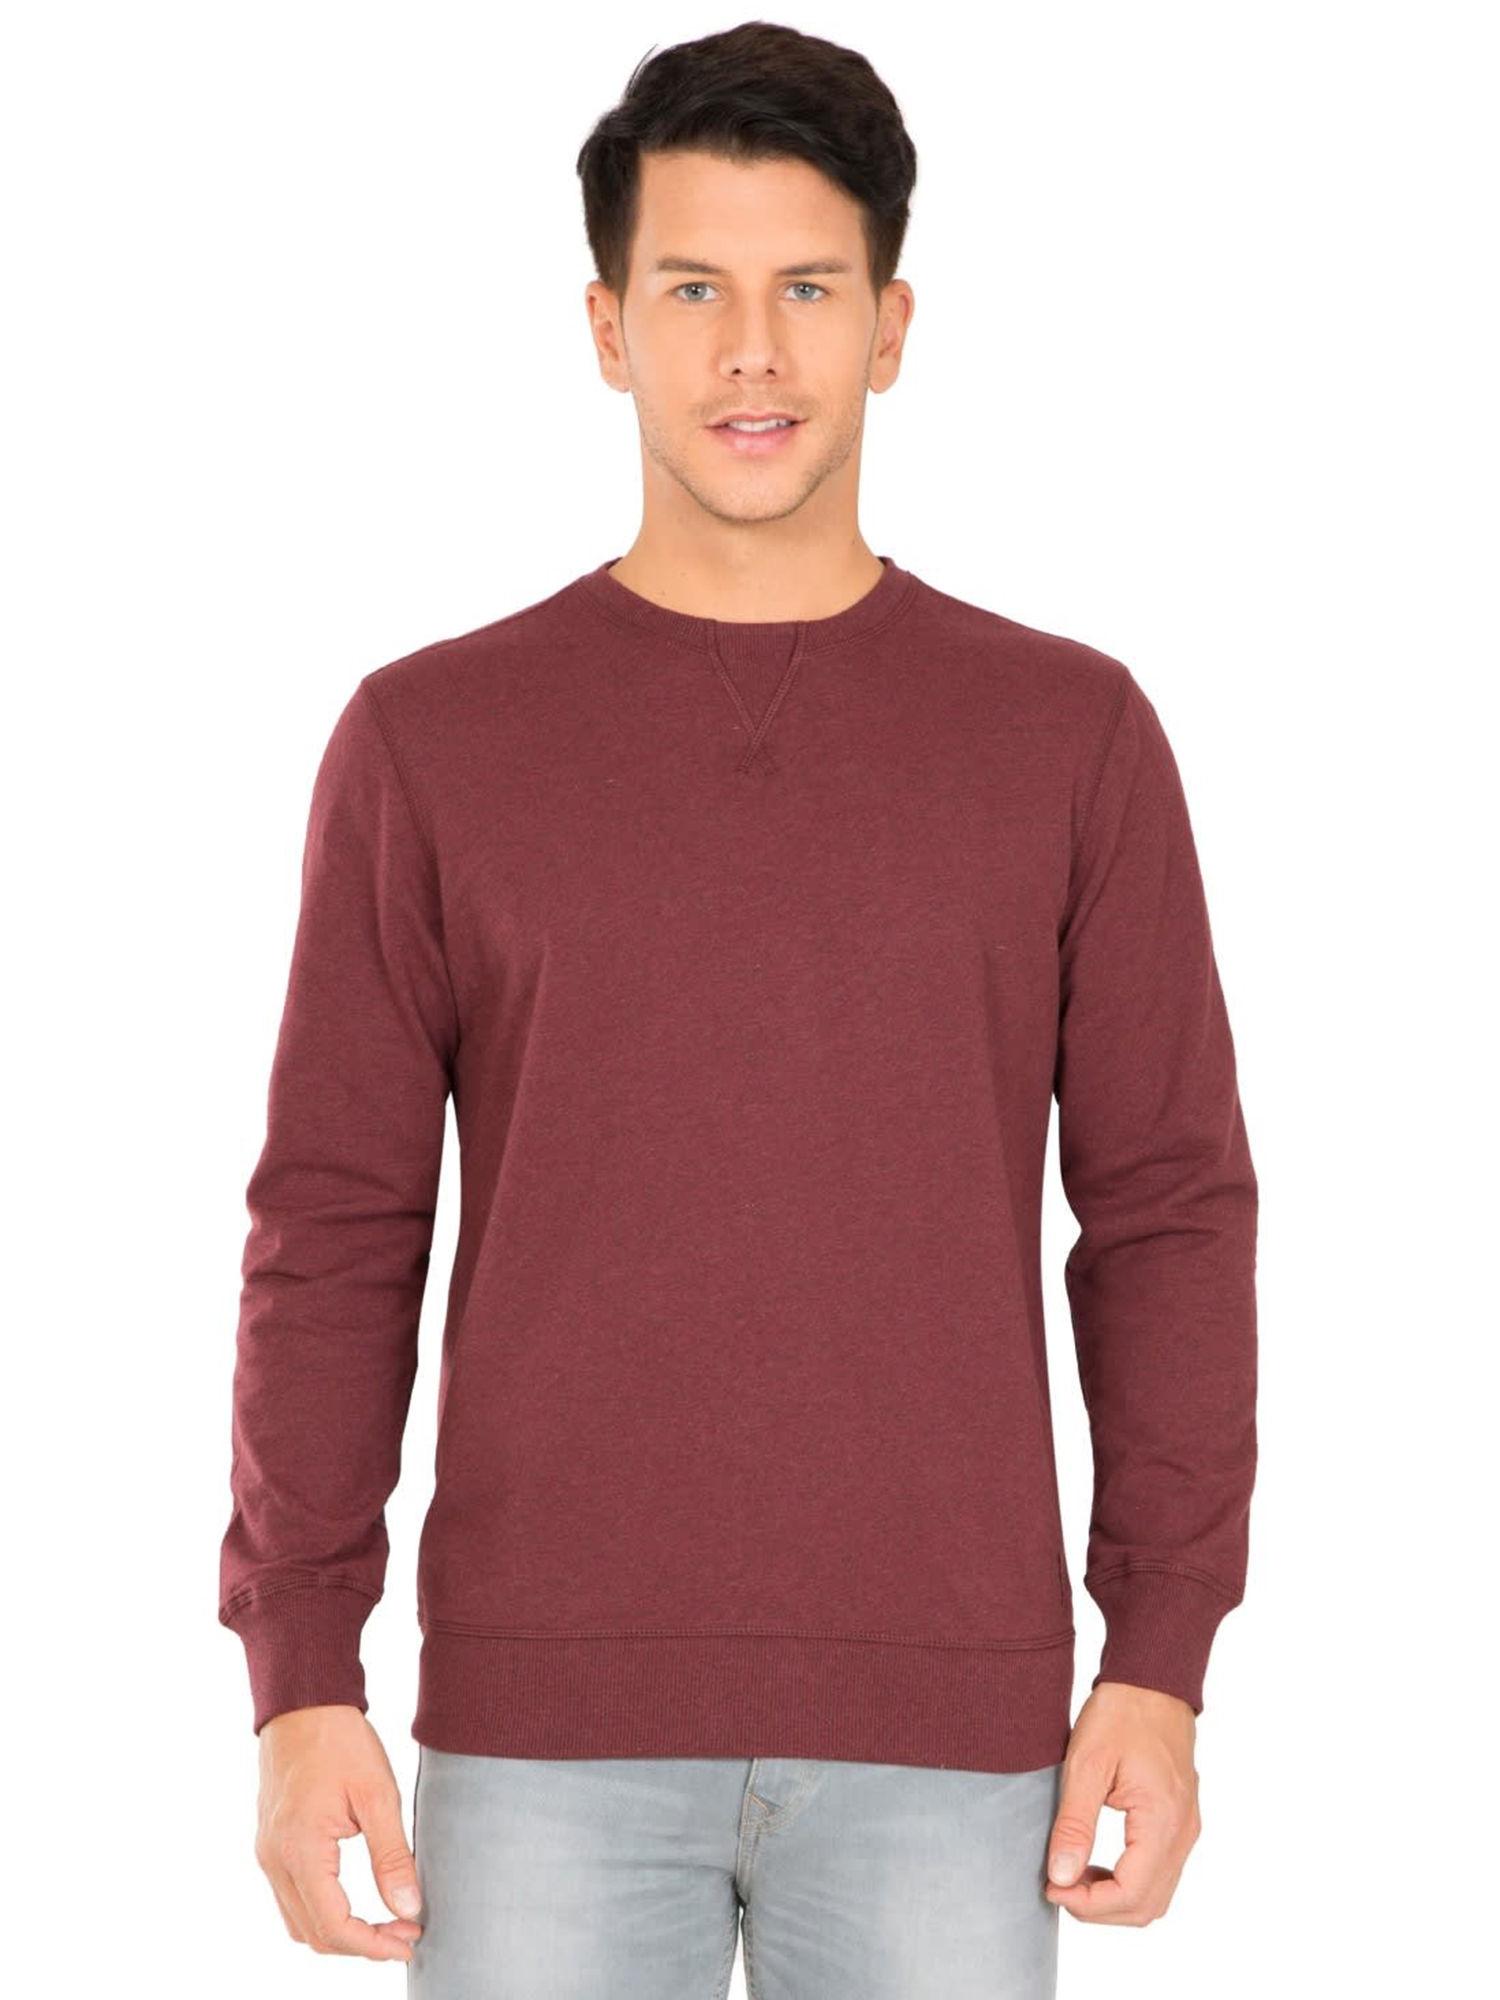 burgundy melange solid sweatshirt